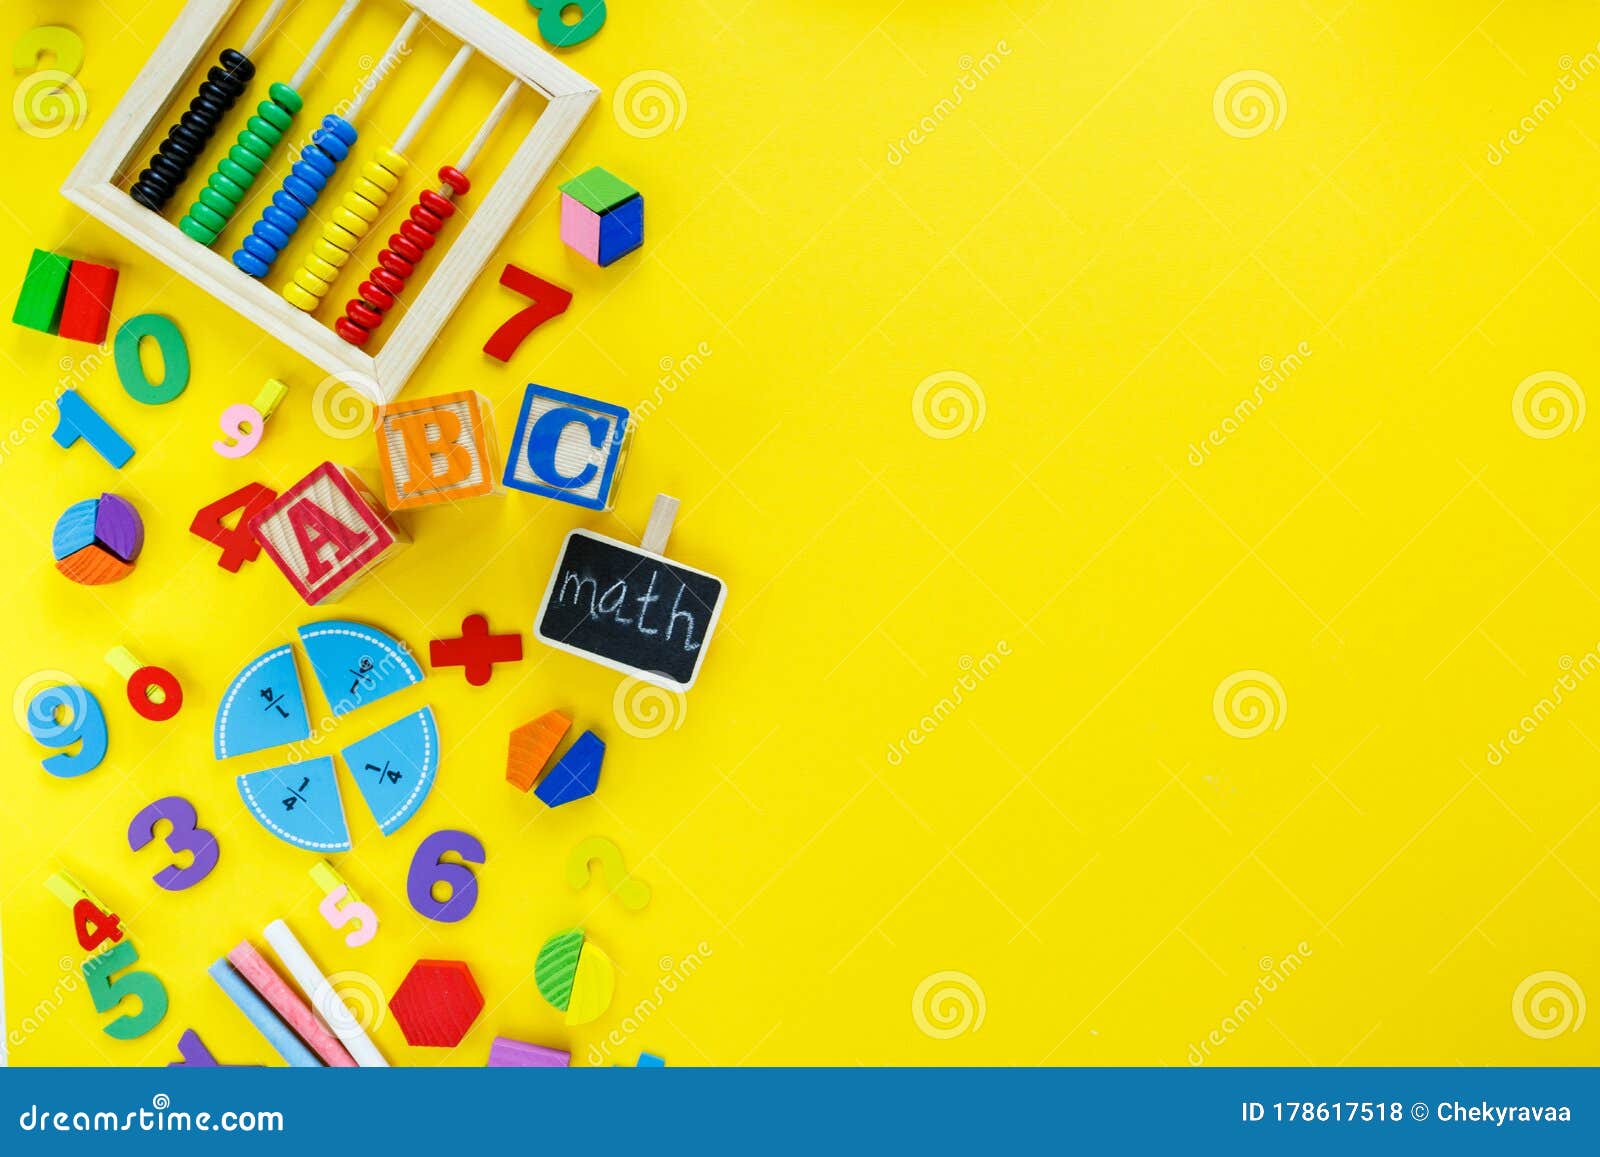 Hãy sử dụng số phân và chữ cái màu sắc trên nền vàng để tạo ra một bài thuyết trình độc đáo và ấn tượng. Với các mẫu PowerPoint này, bạn có thể tạo ra những bài thuyết trình đầy màu sắc và chuyên nghiệp với chỉ vài cú nhấp chuột.